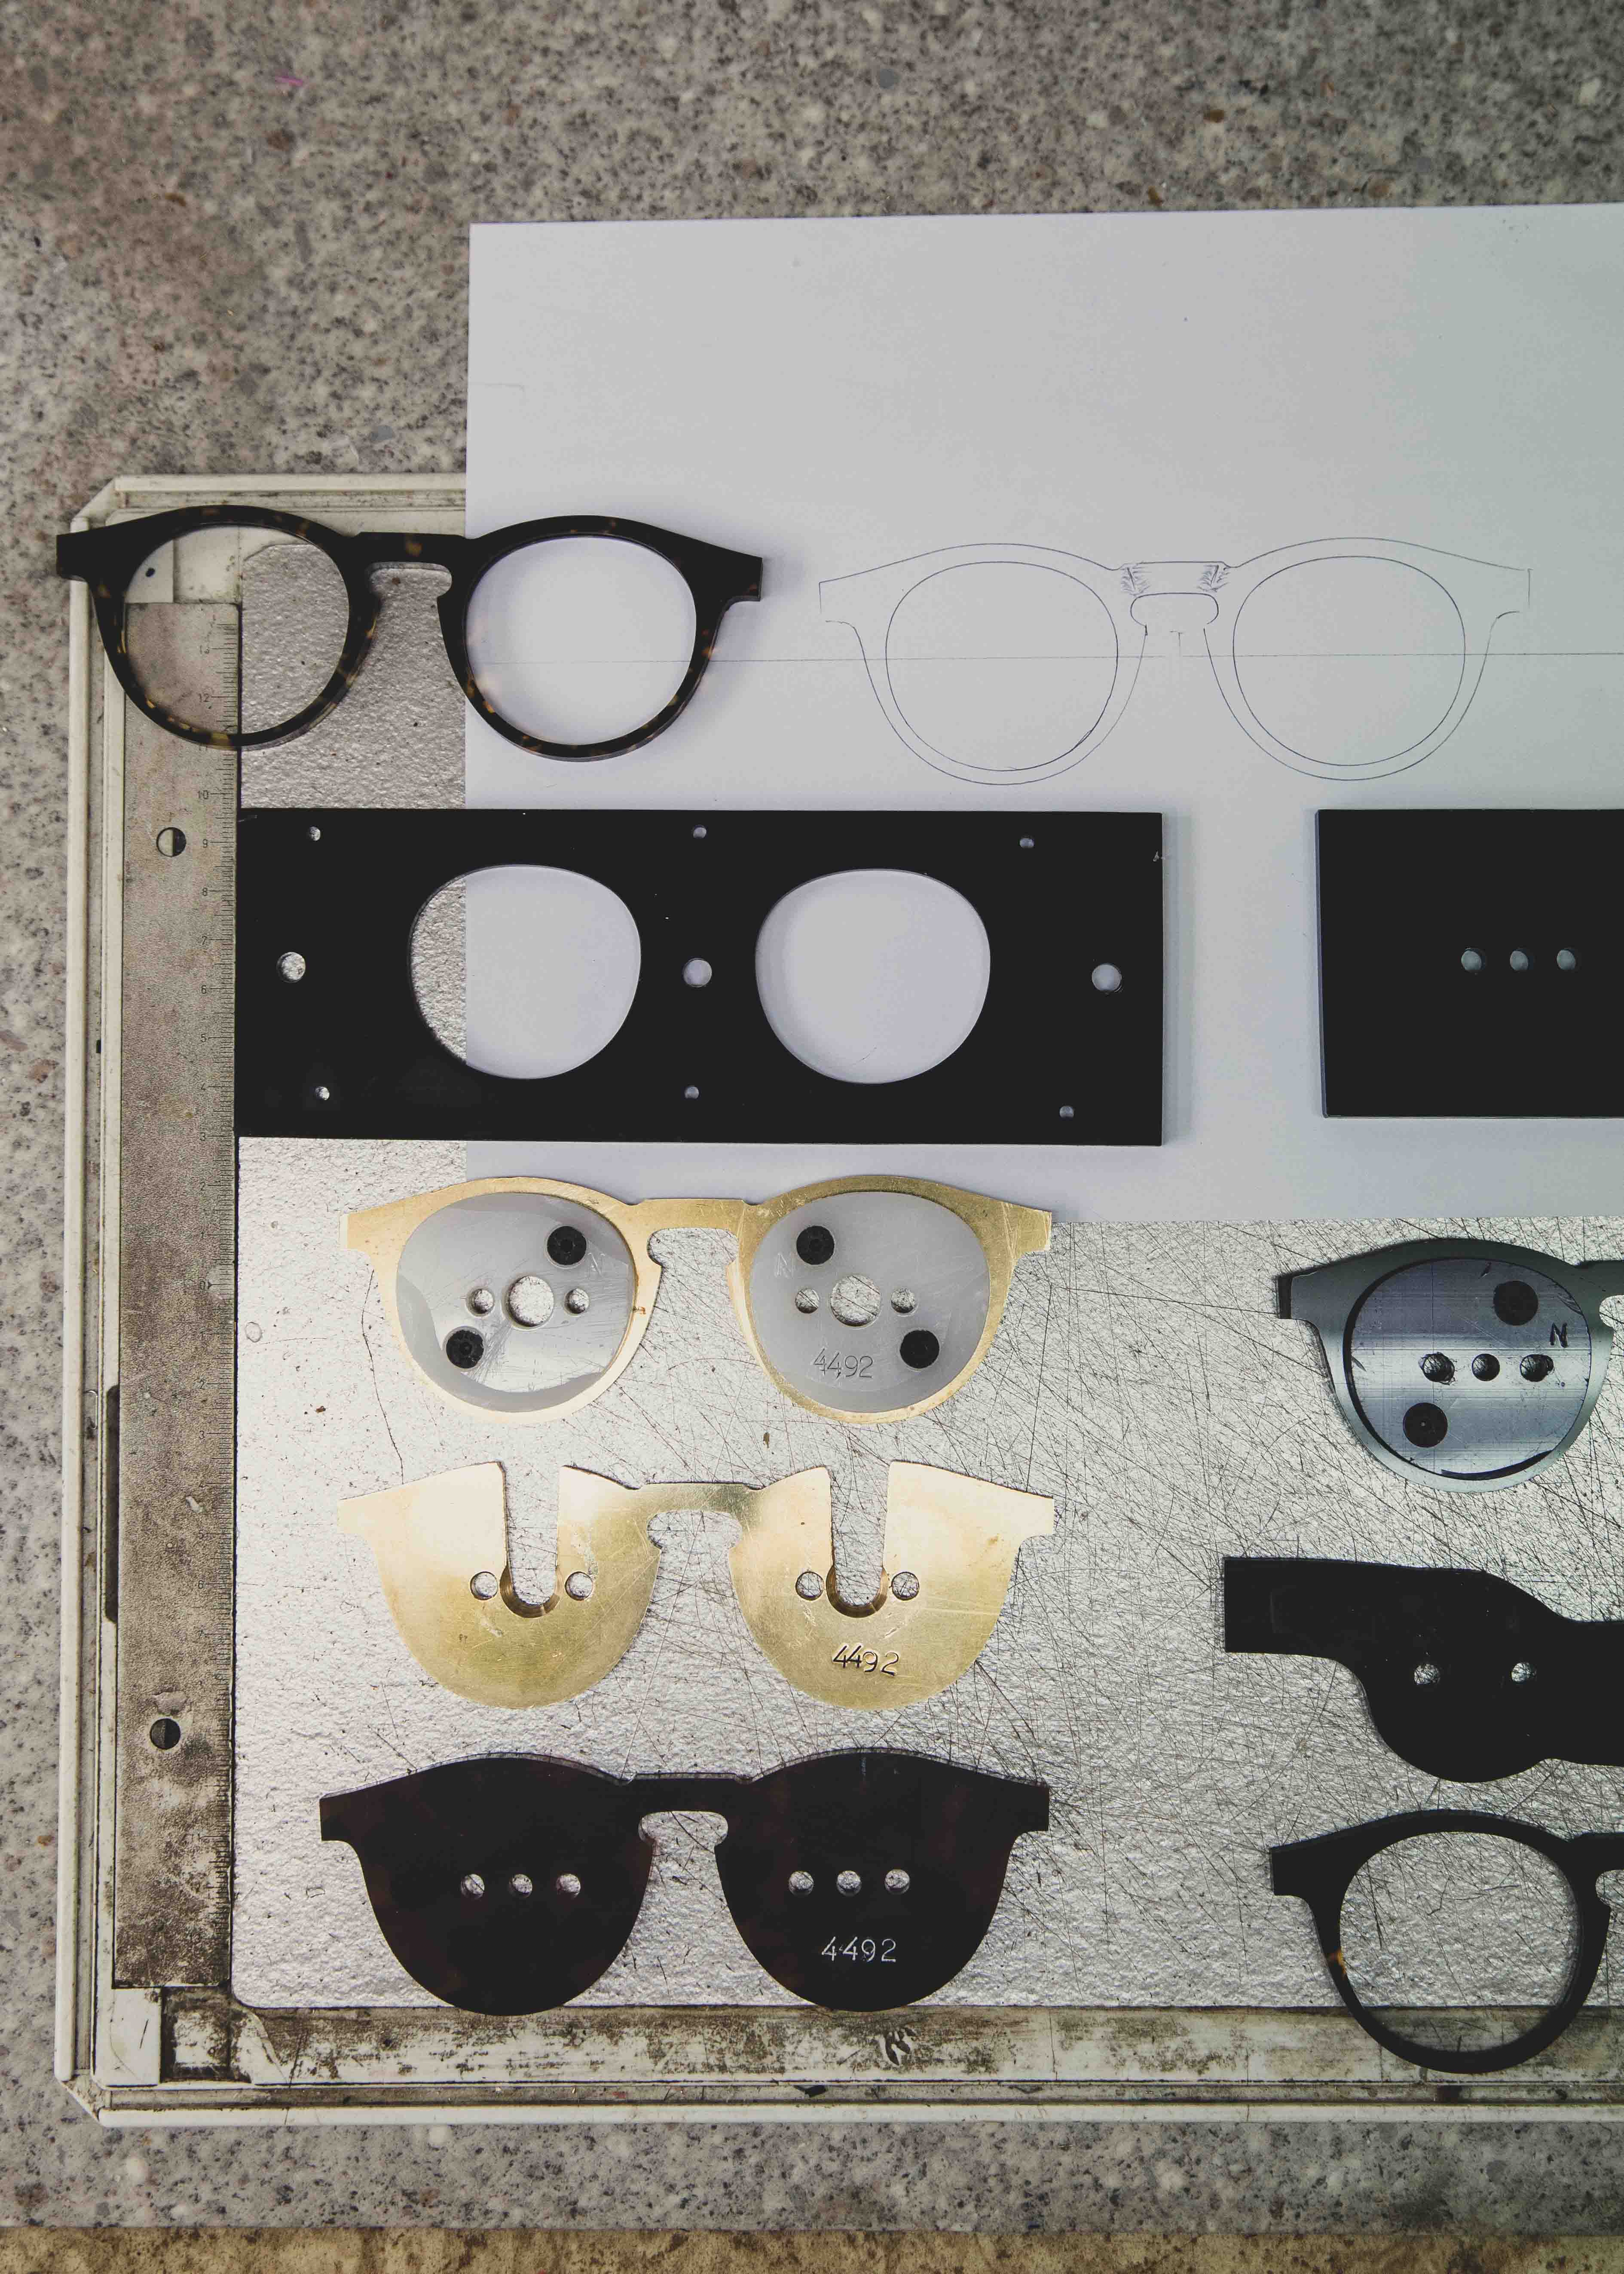 2019-05-21 (191390) Oyonnax, fabrication des lunettes Sensee. x Elysée ©PhS